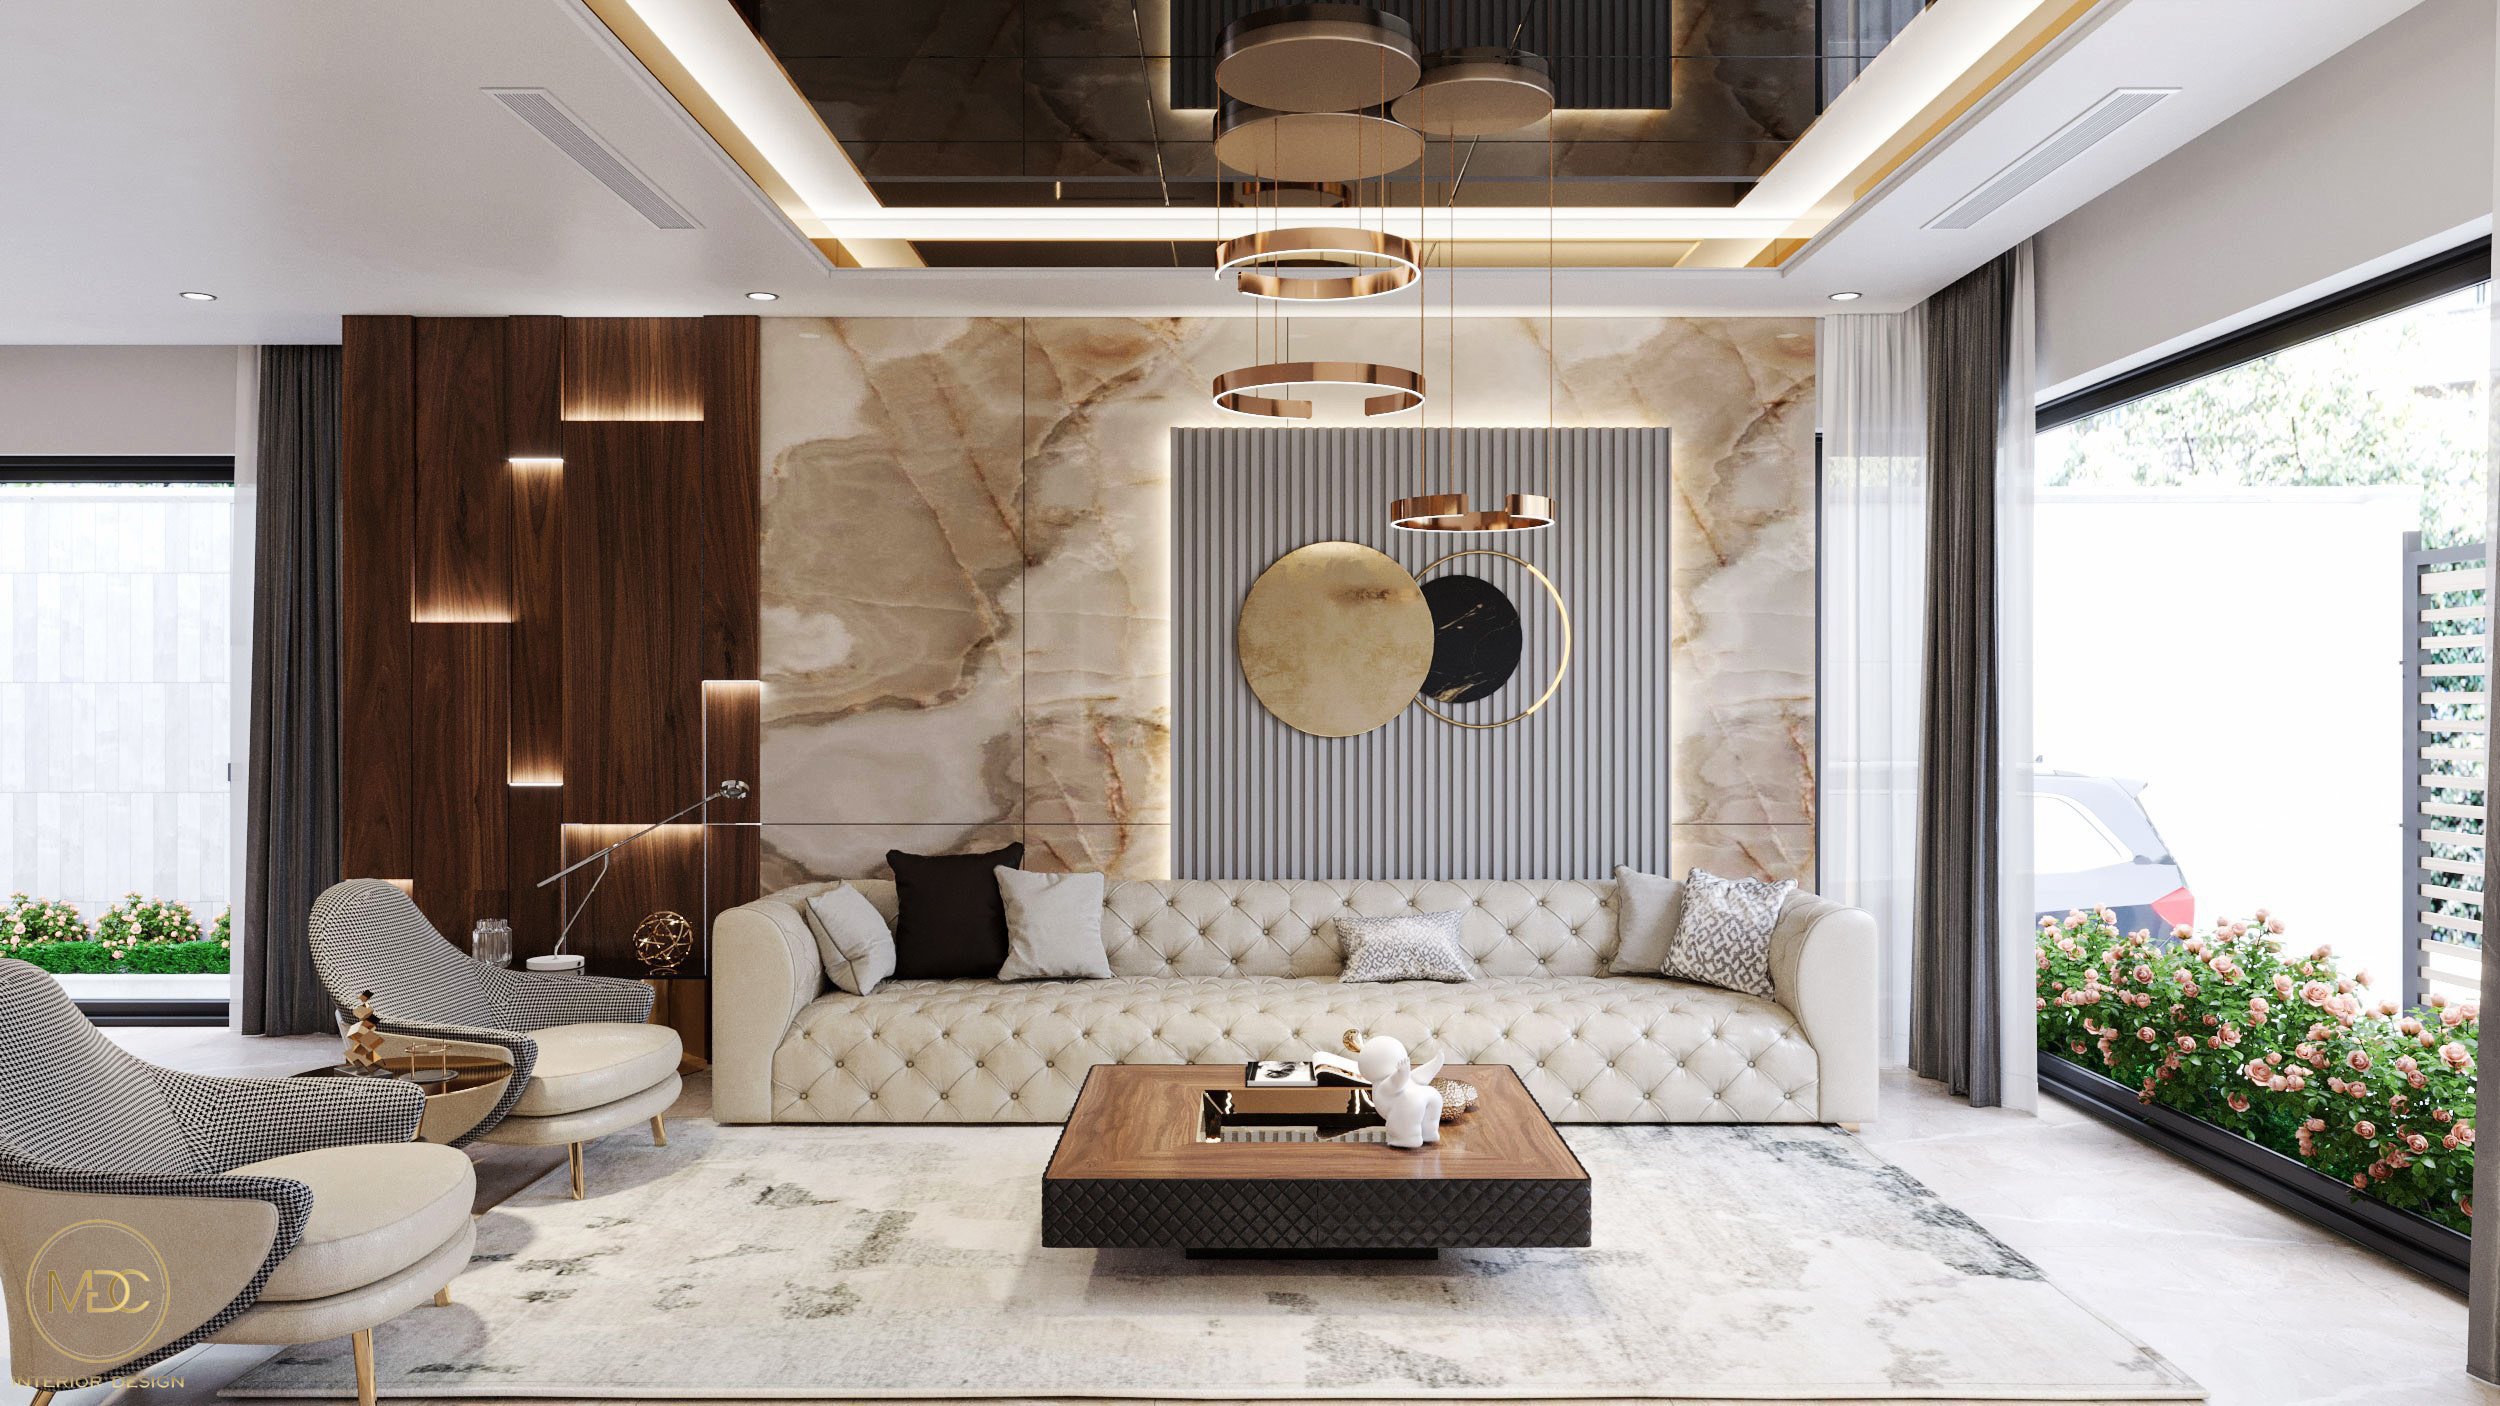 Không gian phòng khách được thiết kế theo phong cách hiện đại - sang trọng thể hiện được đẳng cấp của chủ nhân sở hữu.